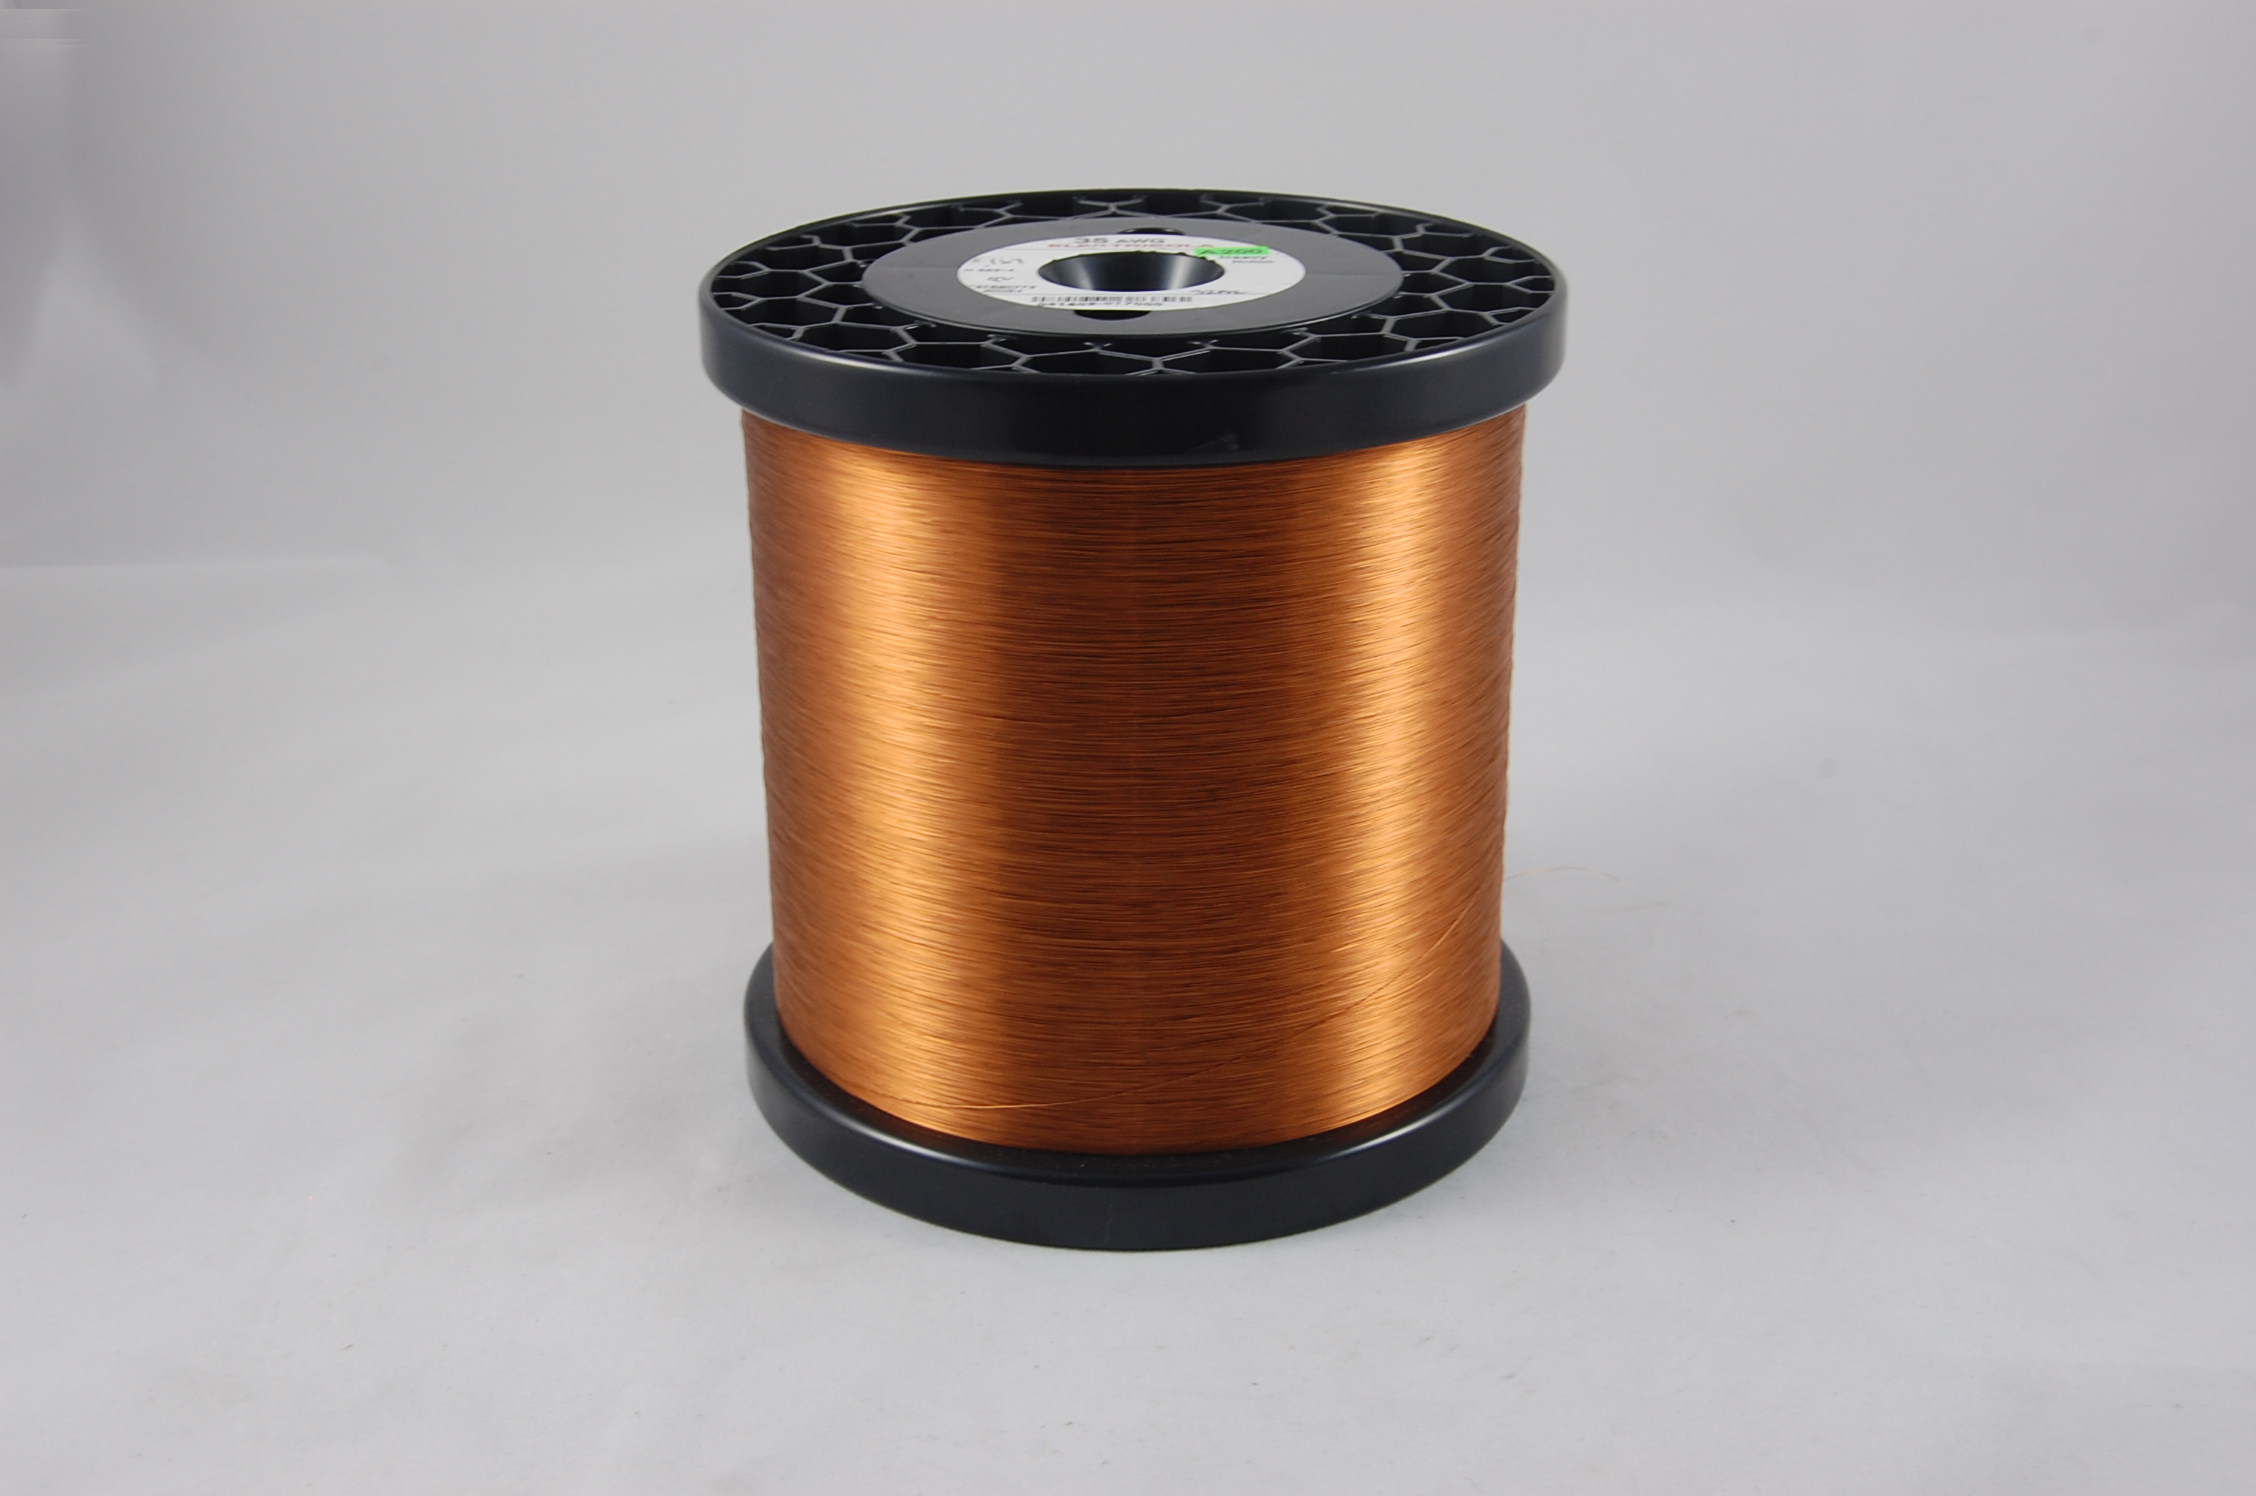 #42 Single Amidester 200 Round MW 74 Copper Magnet Wire 200°C, copper,  14 LB 6" x 6" spool (average wght.)